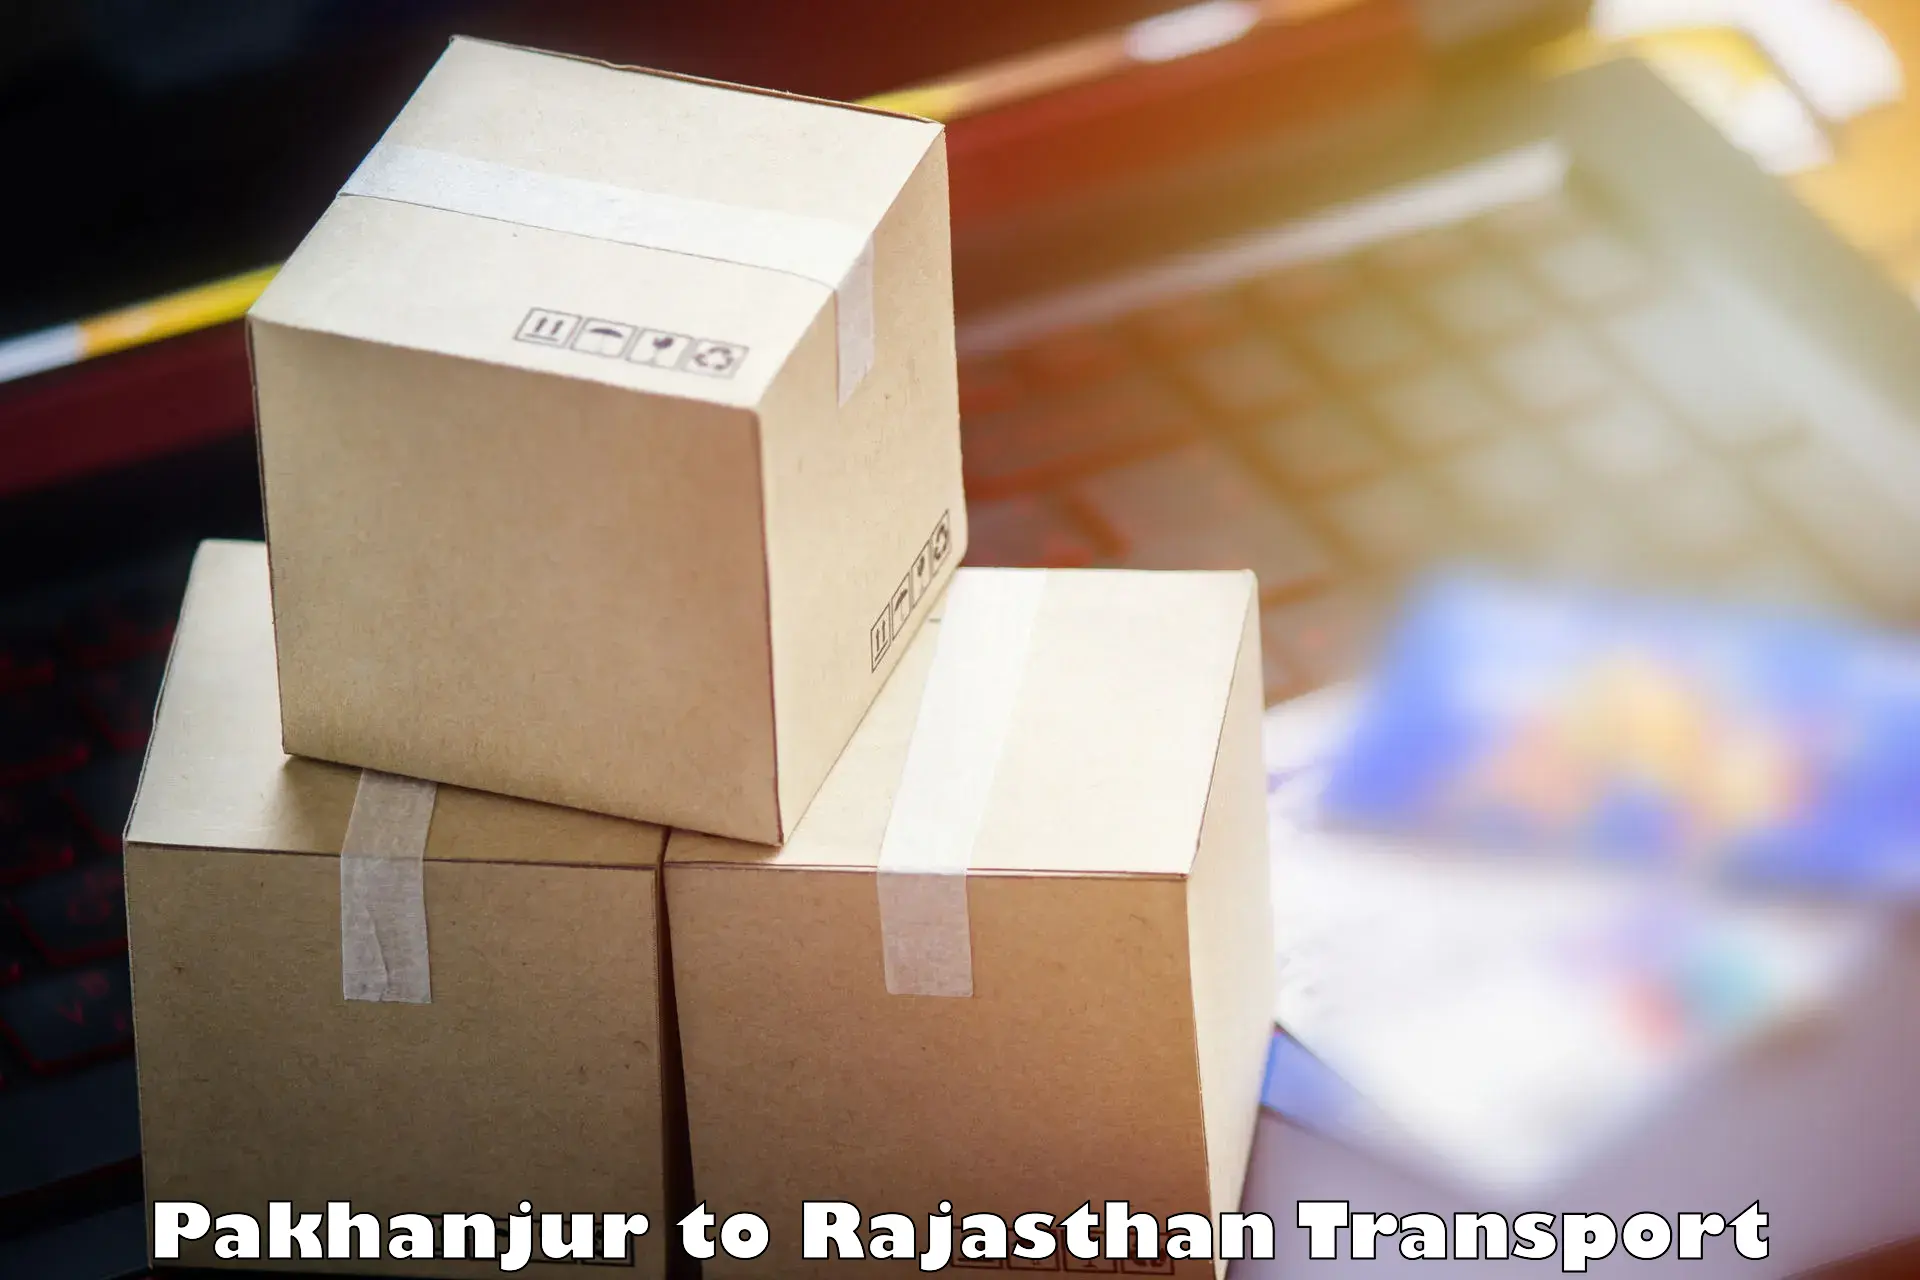 Cargo transport services in Pakhanjur to Lohawat